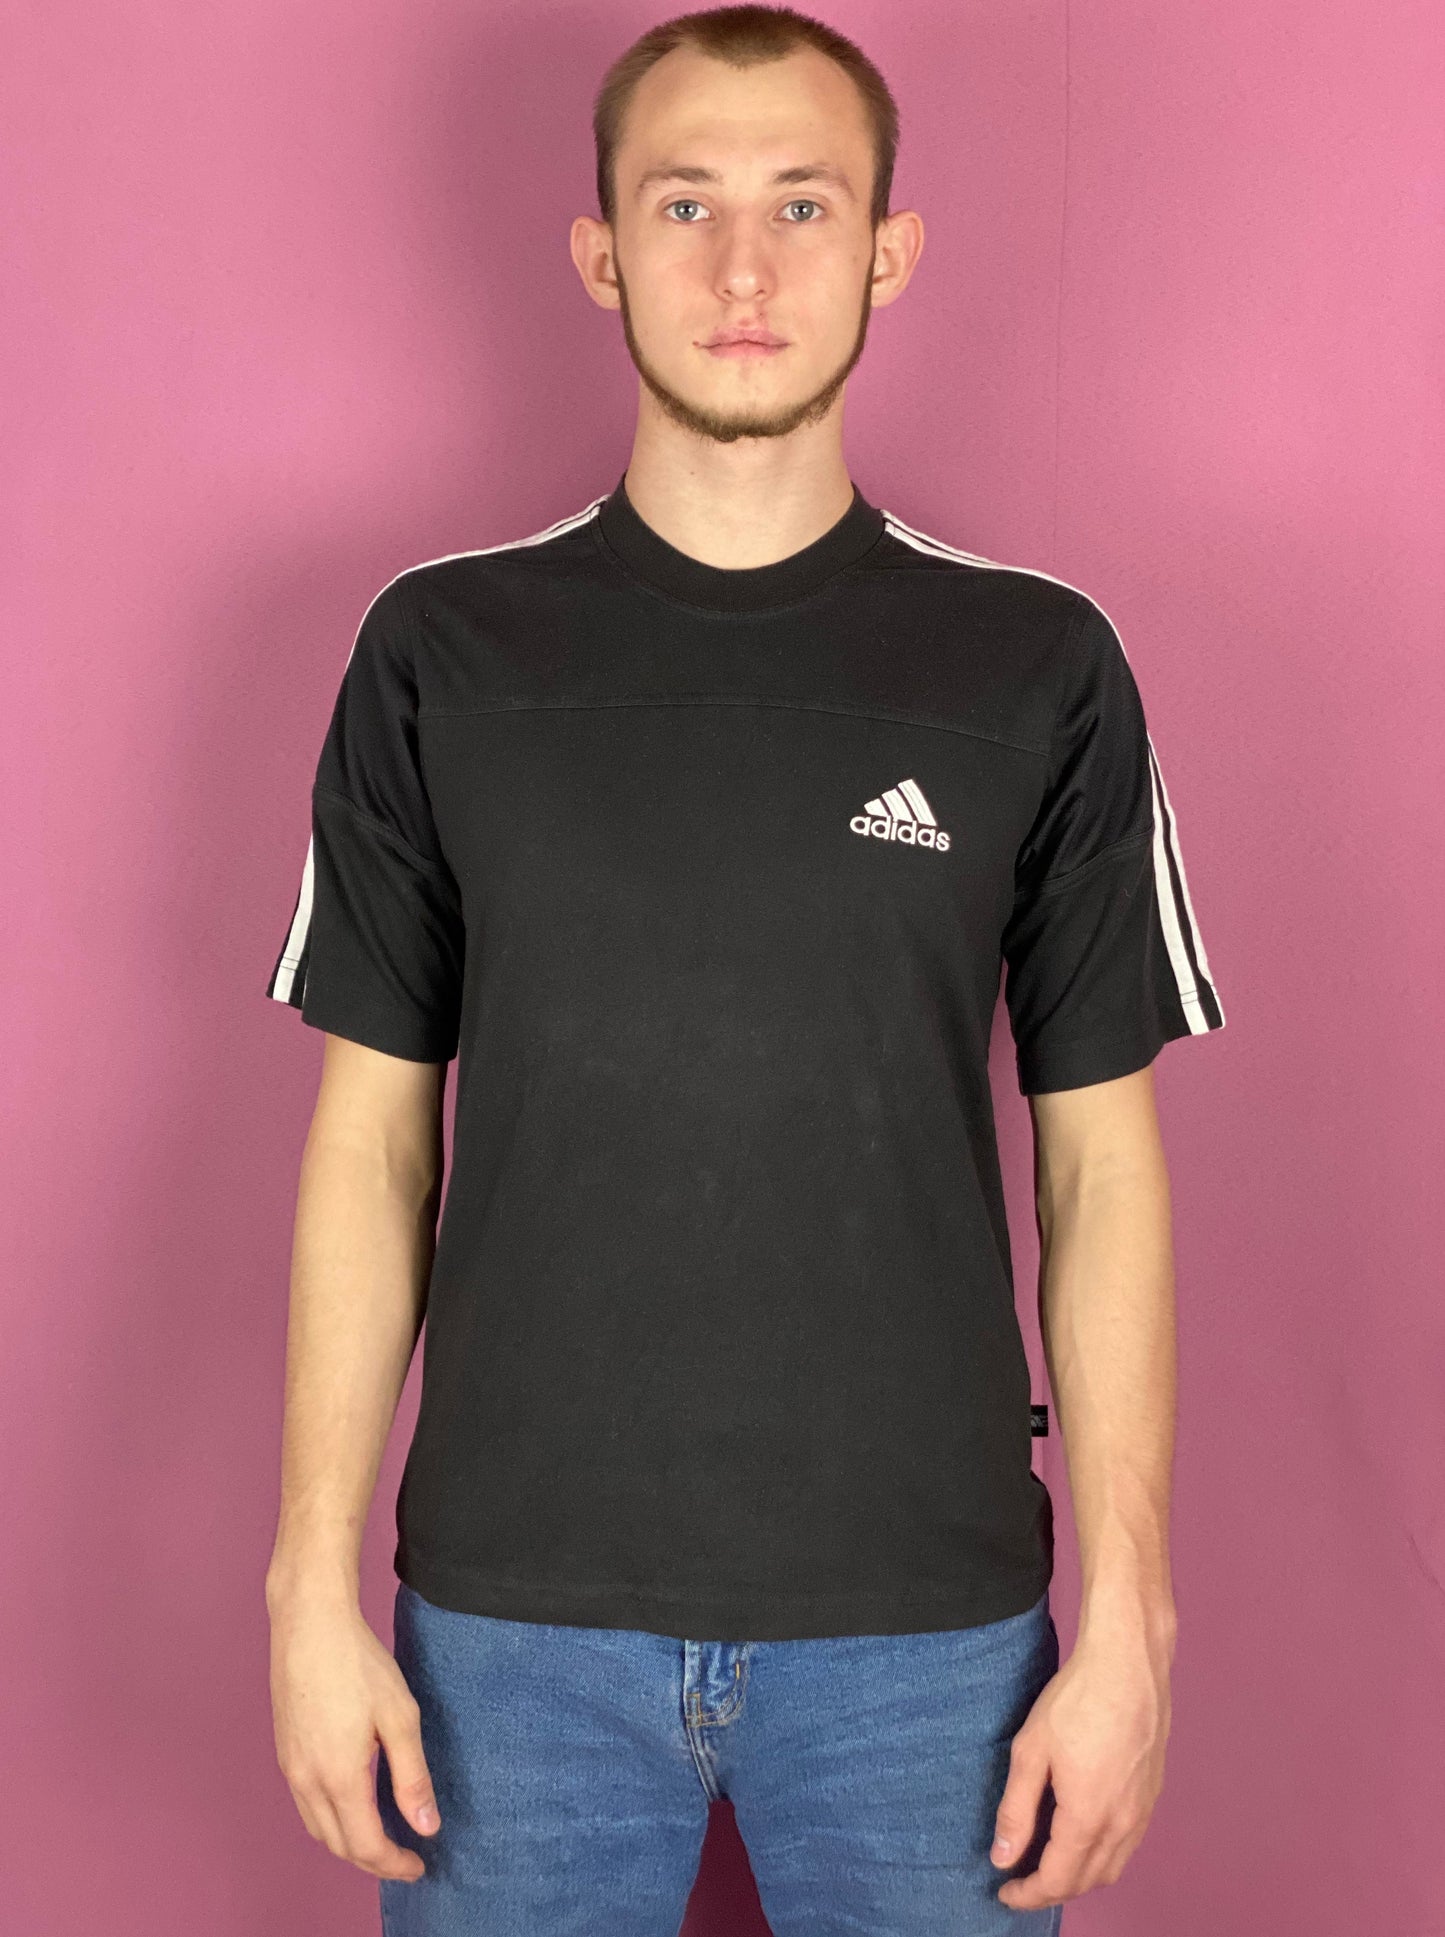 90s Adidas Vintage Men's T-Shirt - Small Black Cotton Blend